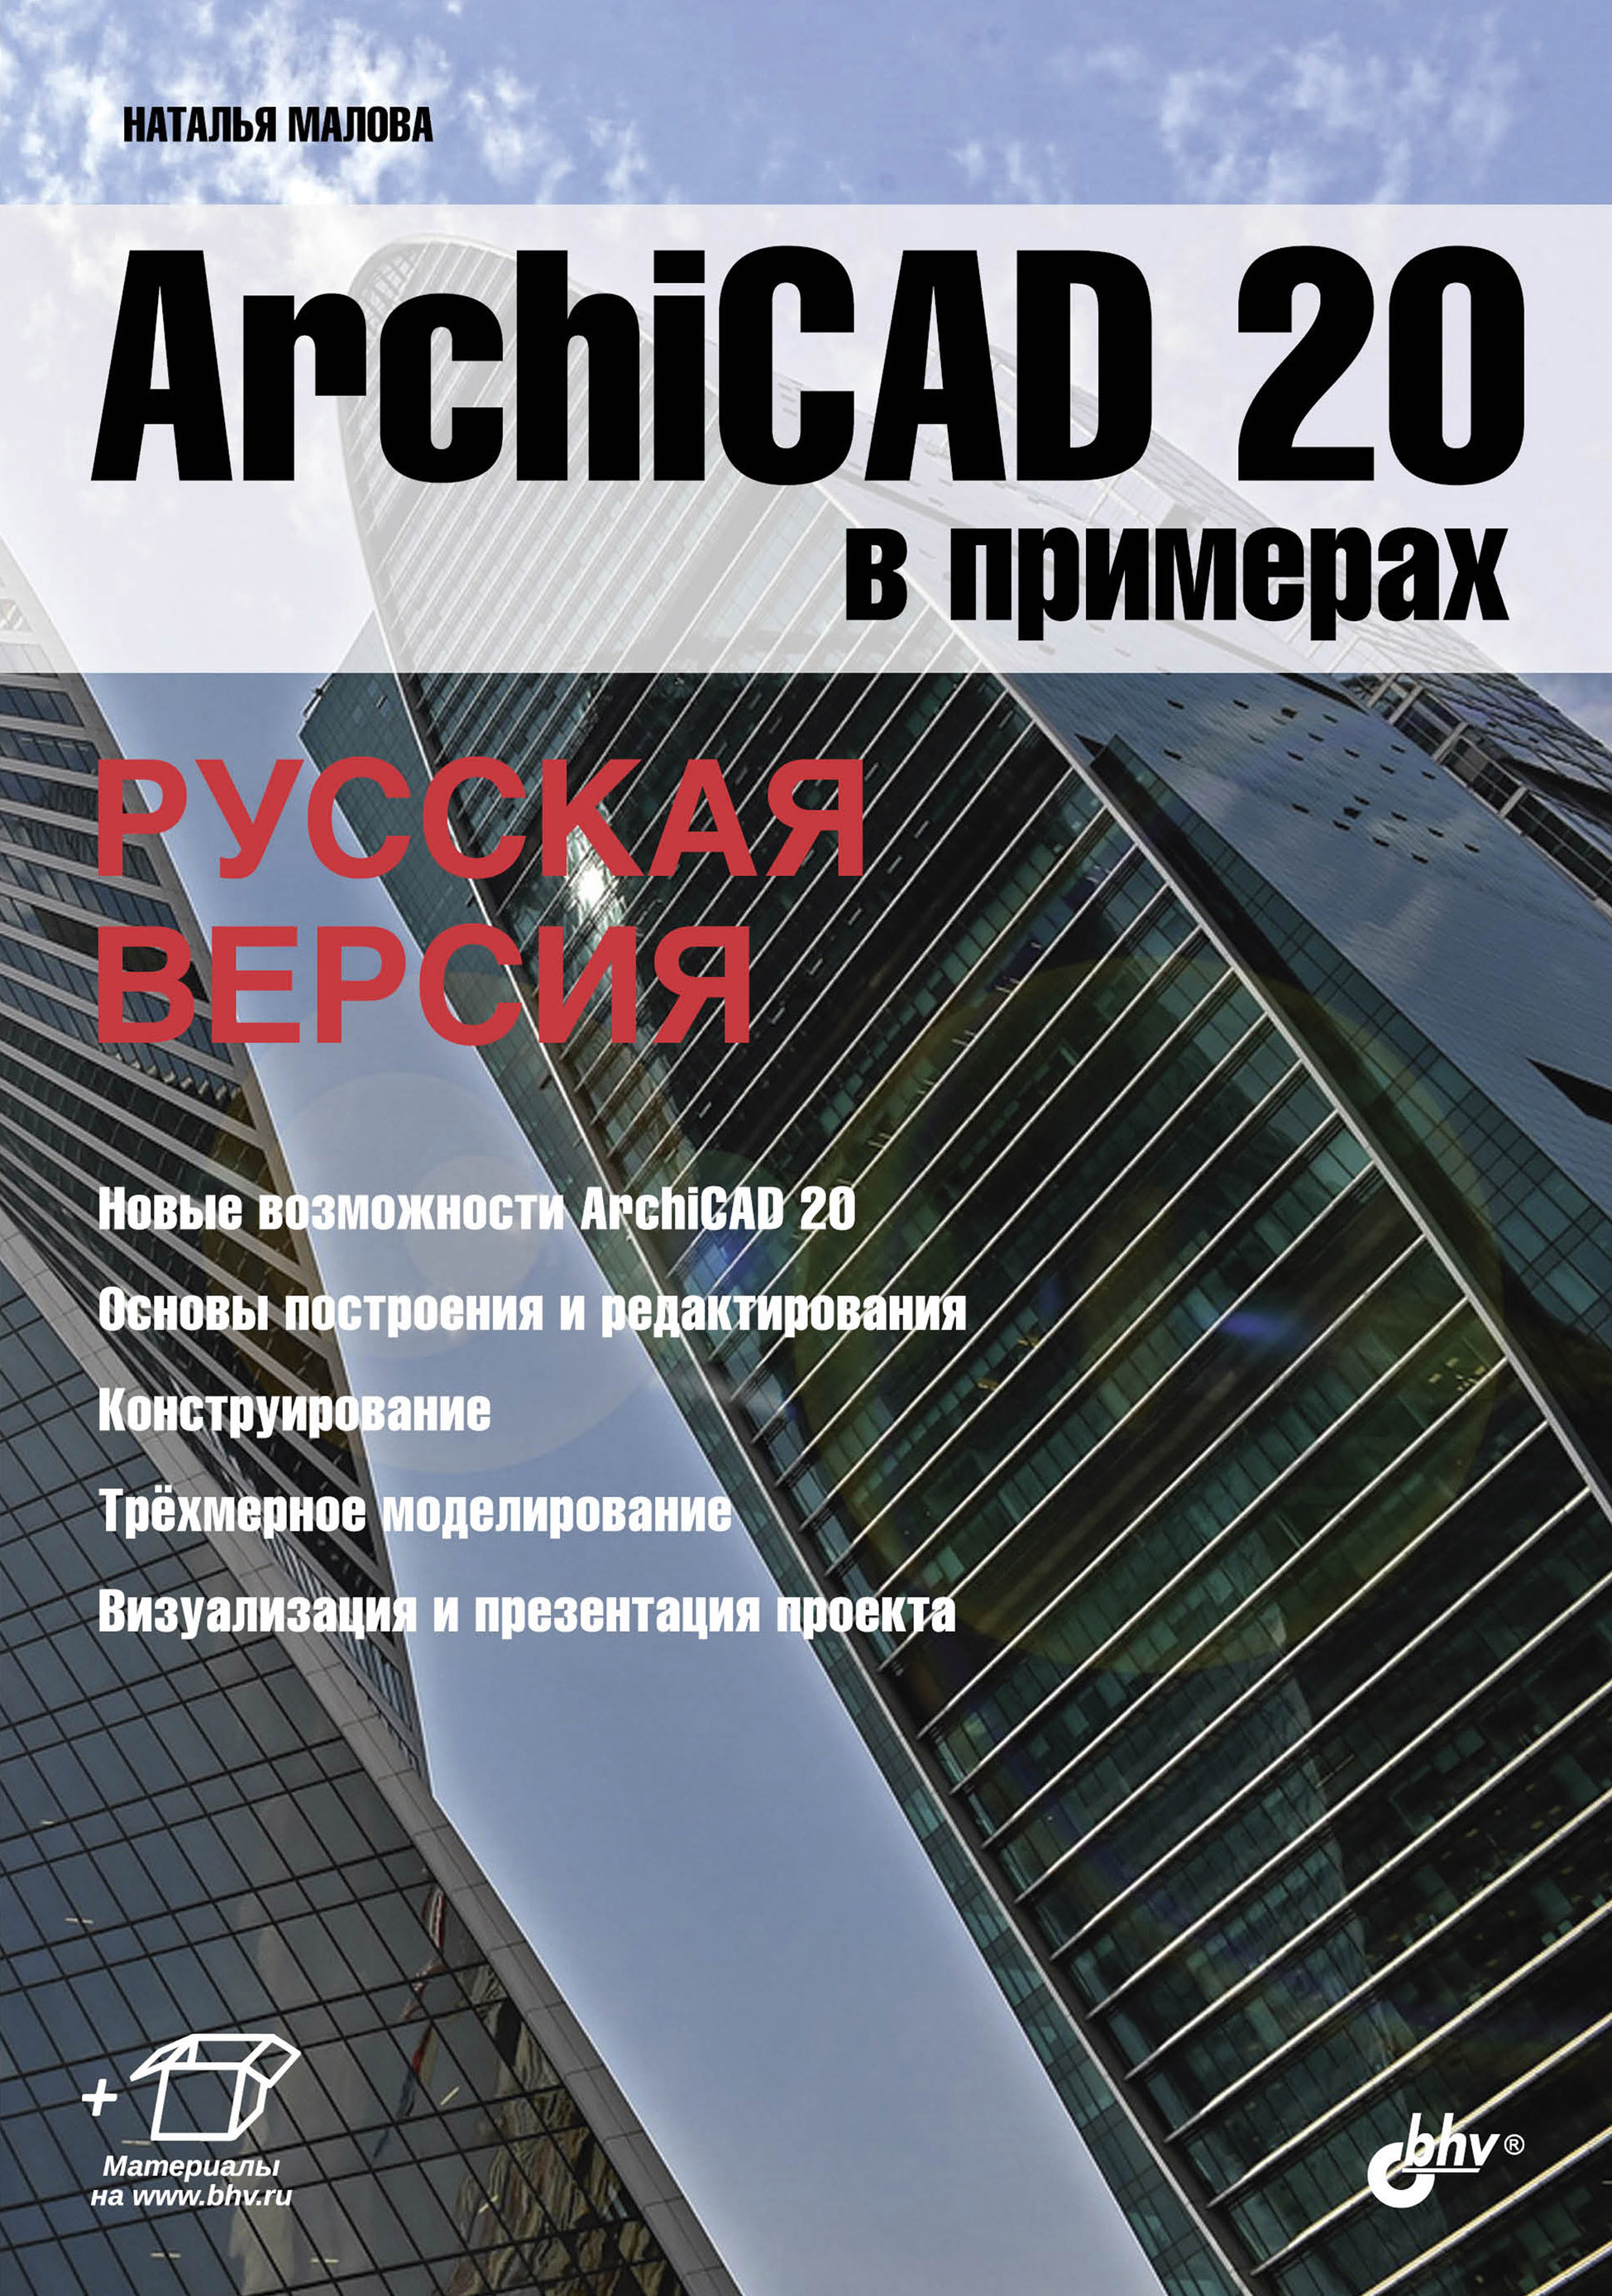 ArchiCAD 20в примерах. Русская версия